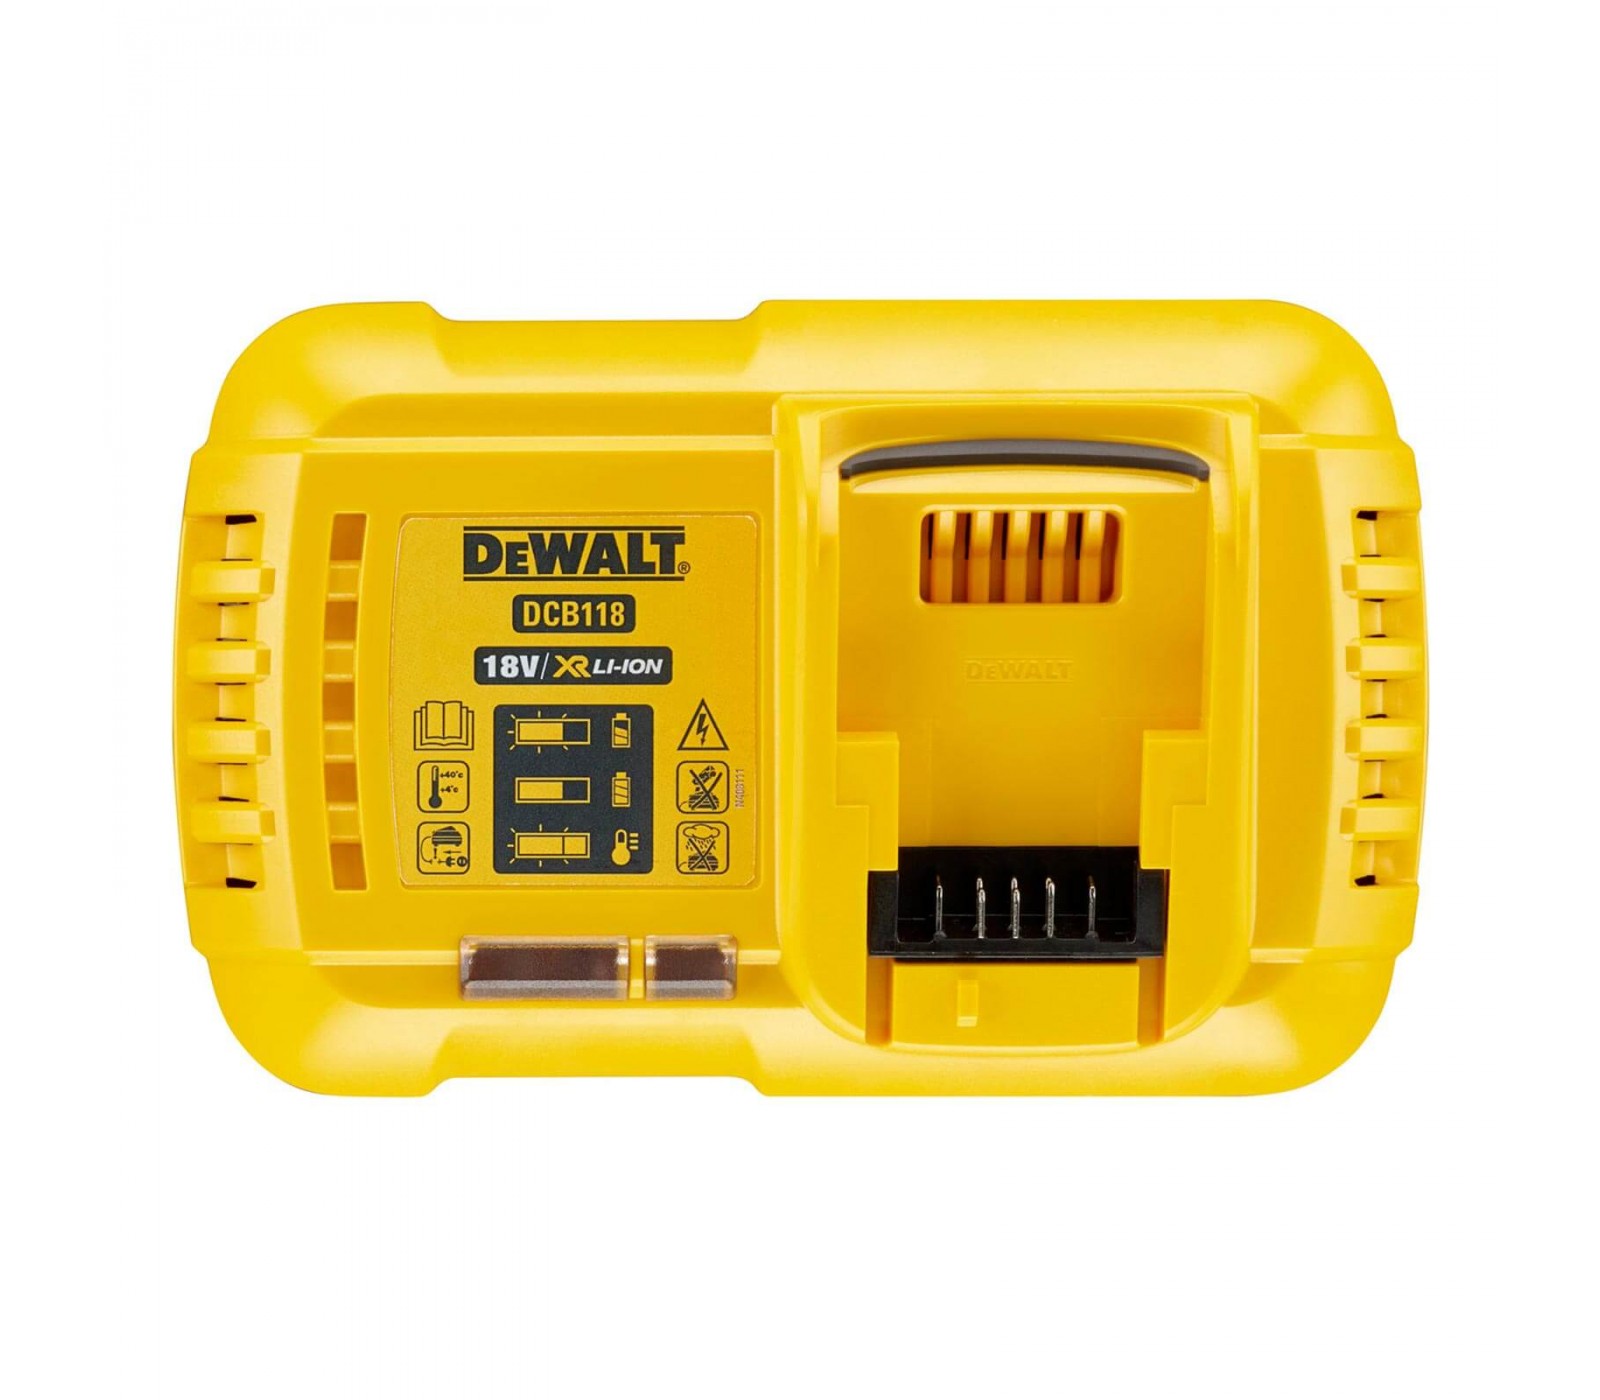 Dewalt - DeWalt DCB118T3XR FLEXVOLT Chargeur + 3x DCB546 Batteries